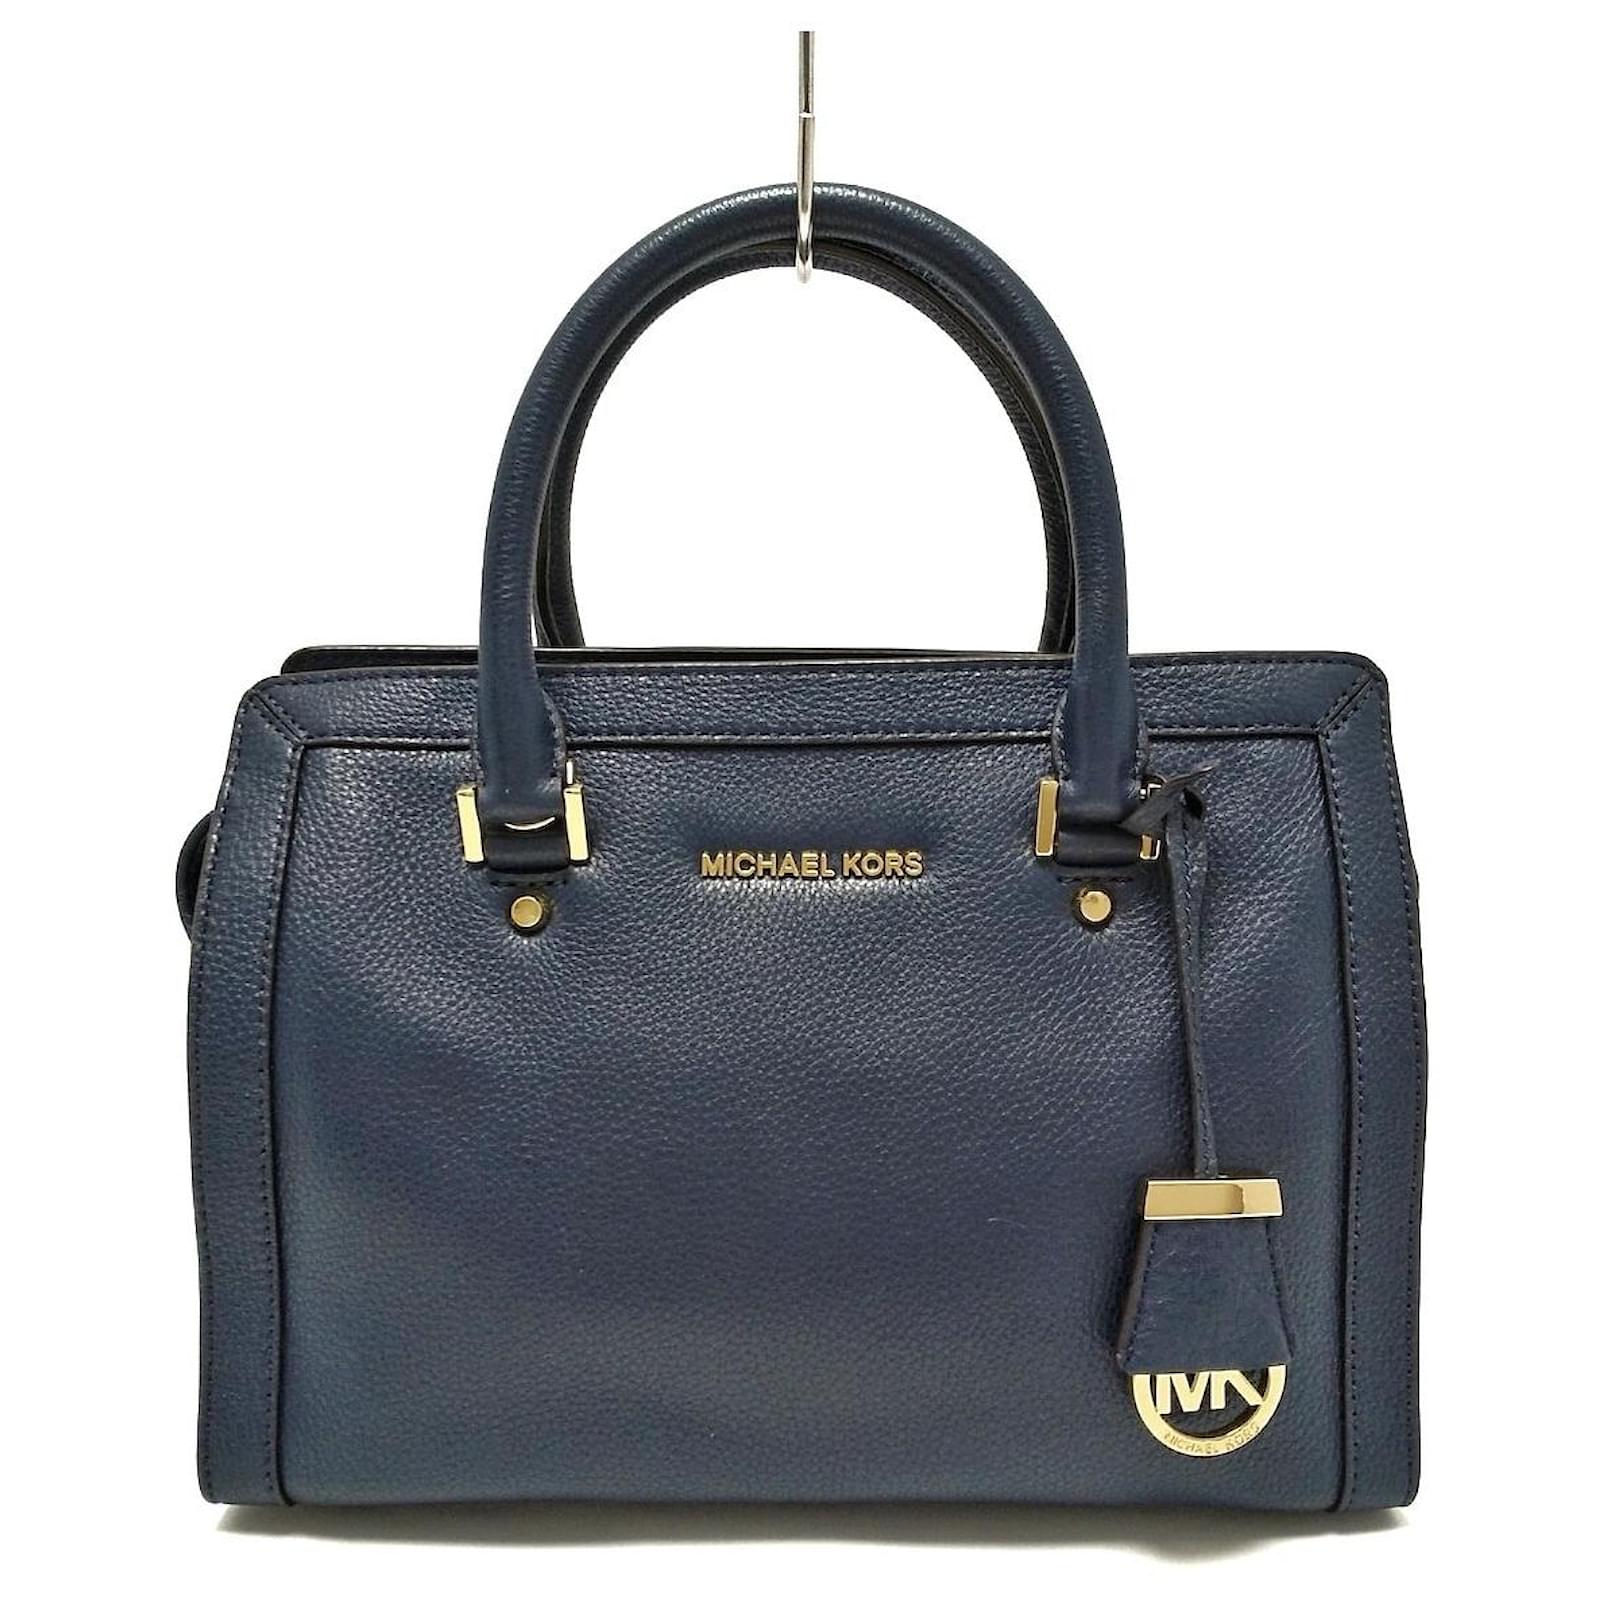 MICHAEL KORS: handbag for woman - Navy